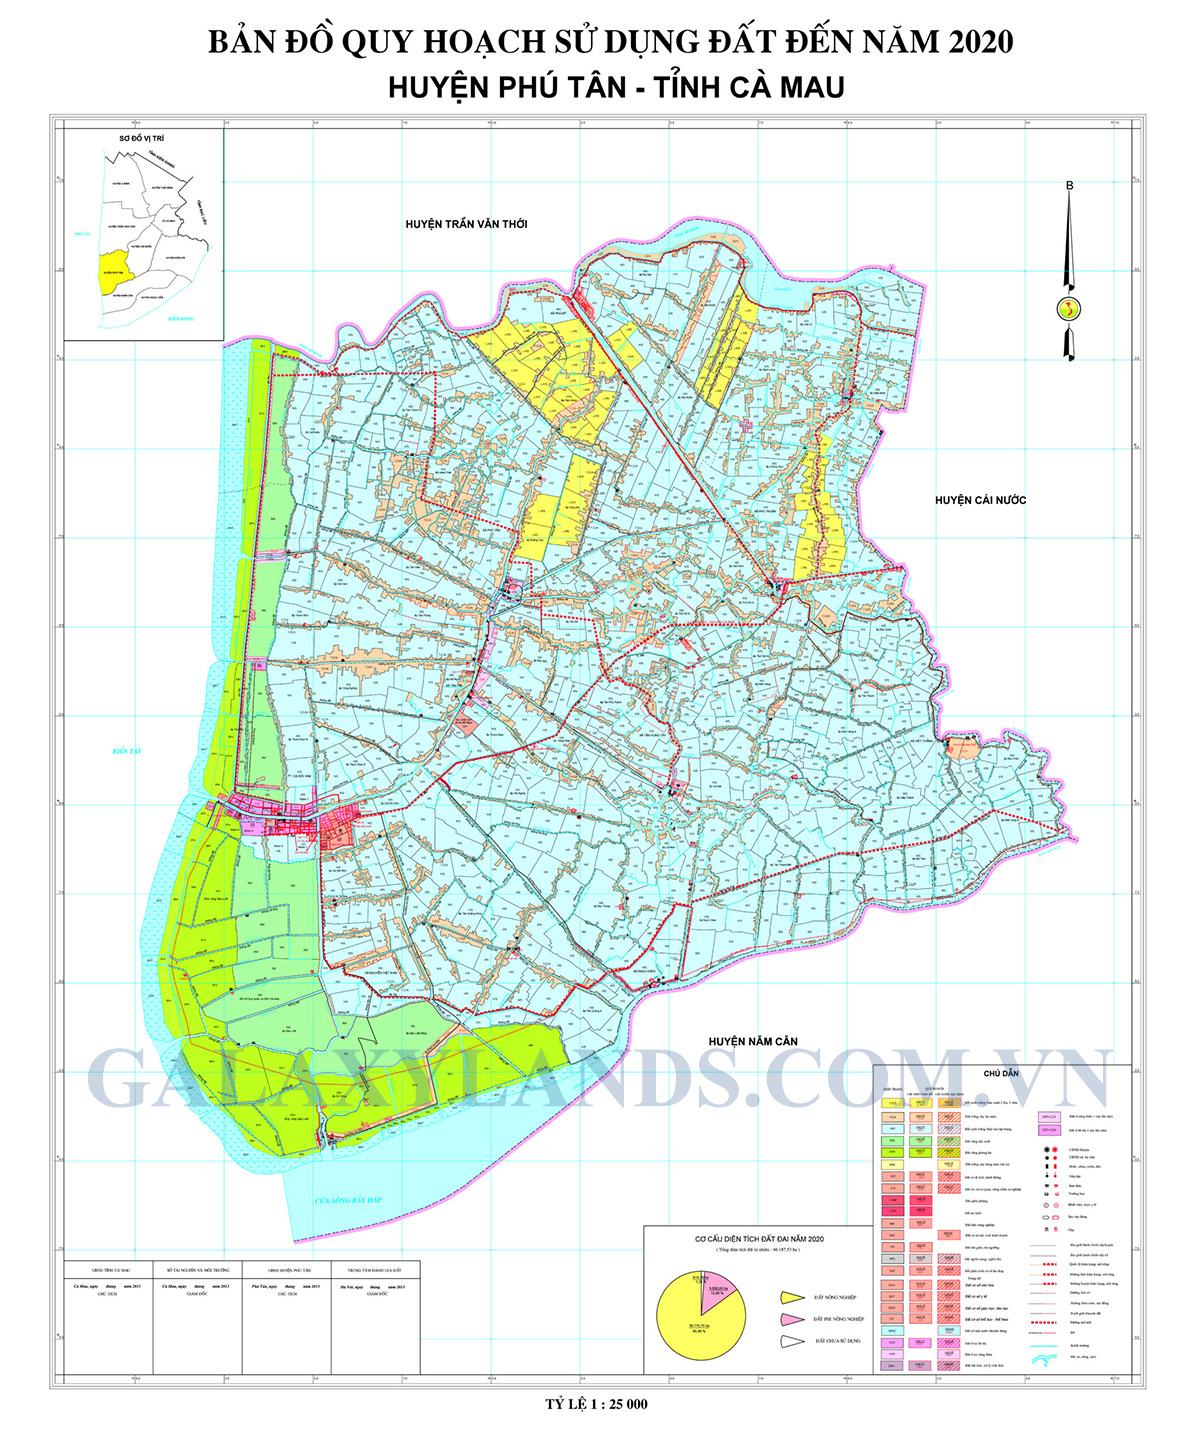 Bản đồ quy hoạch sử dụng đất Huyện Phú Tân tỉnh Cà Mau - Bản đồ quy hoạch Huyện Phú Tân